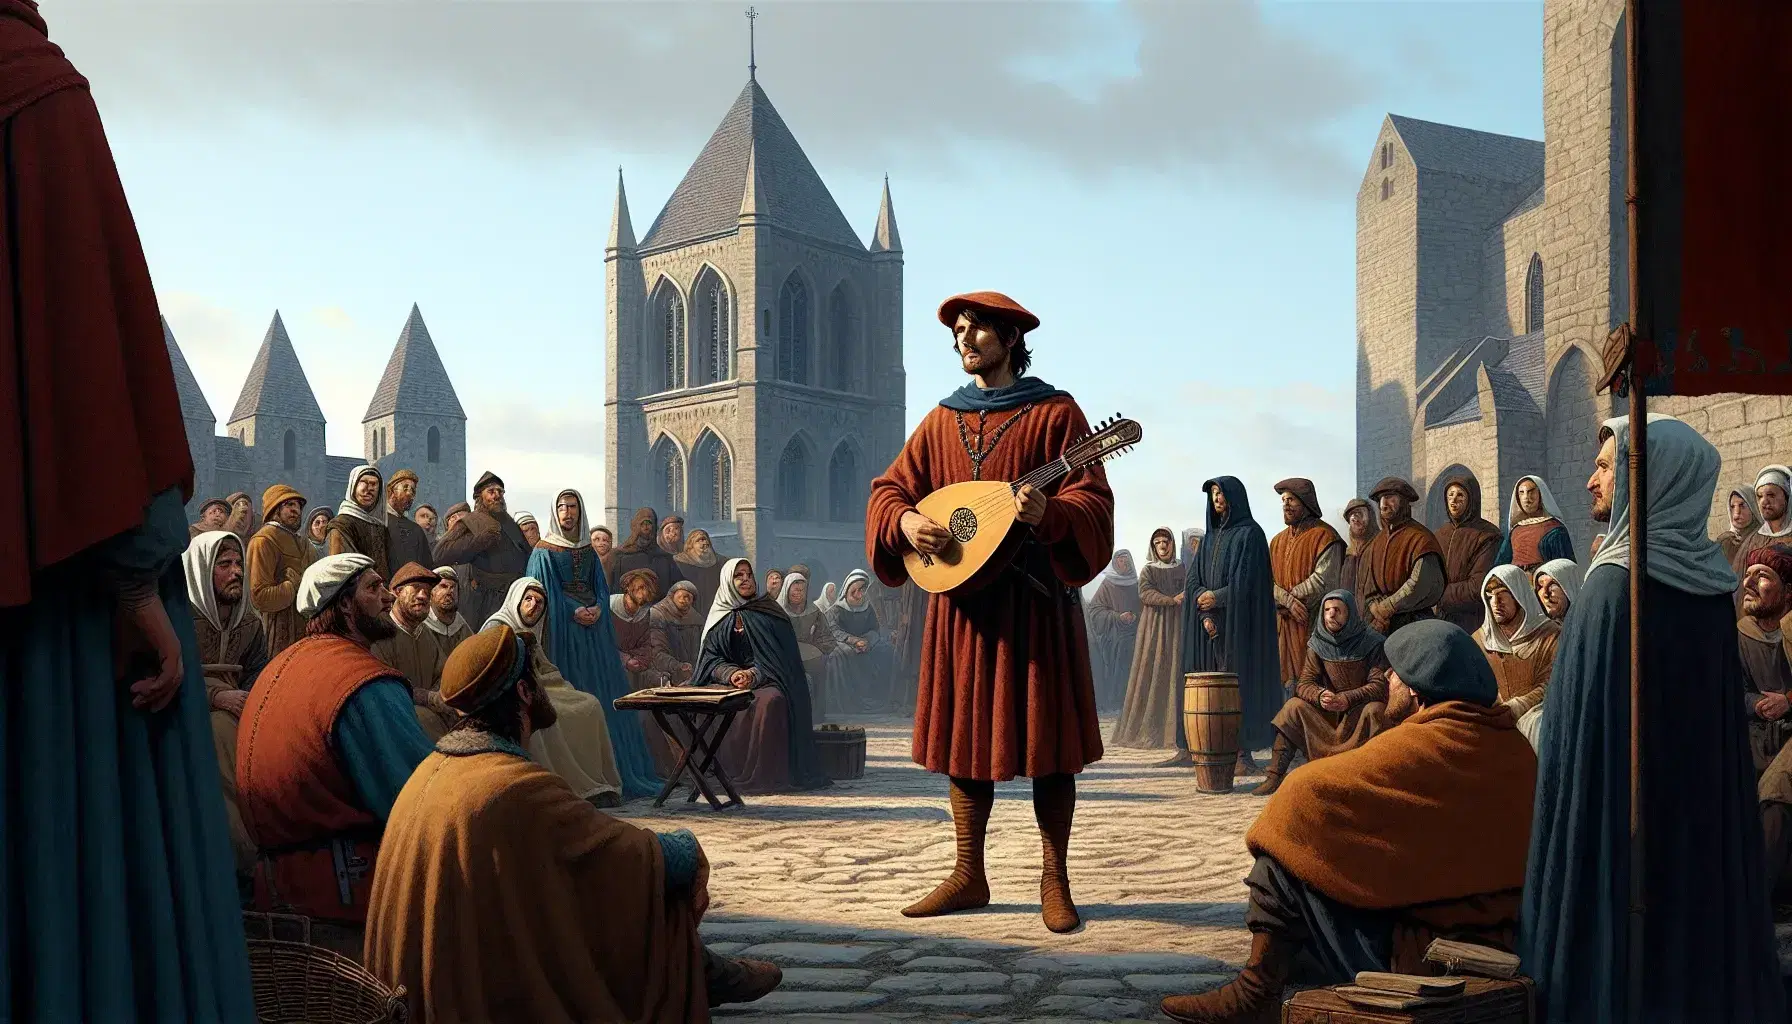 Grupo de personas en atuendos medievales escuchando a un hombre con laúd en una plaza con iglesia de fondo en día soleado.